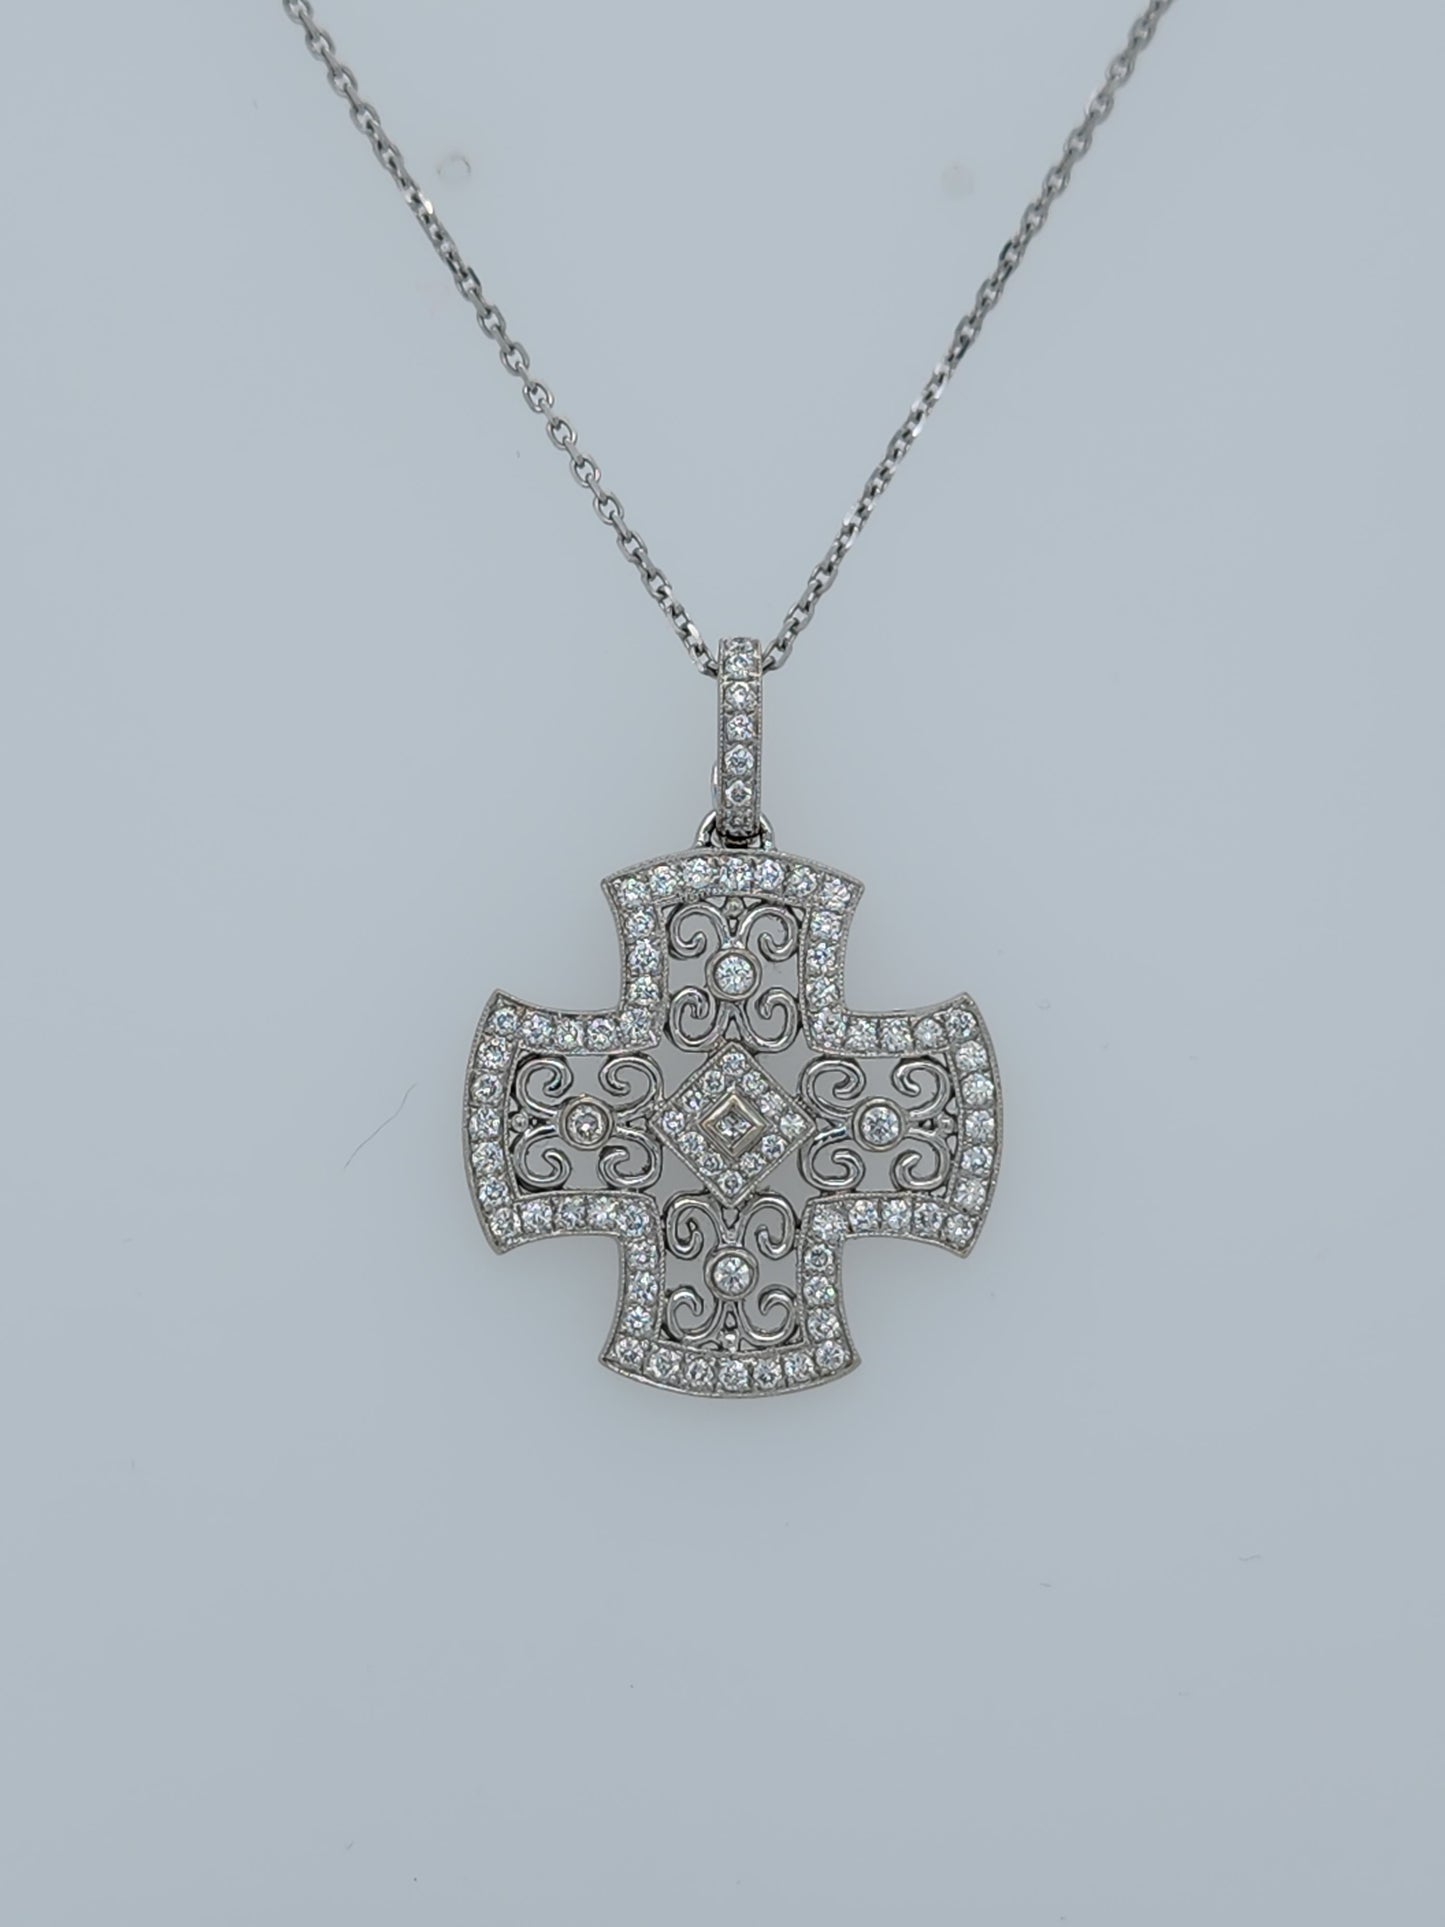 Maltese Cross Enhancer Pendant With Diamonds in 18k White Gold